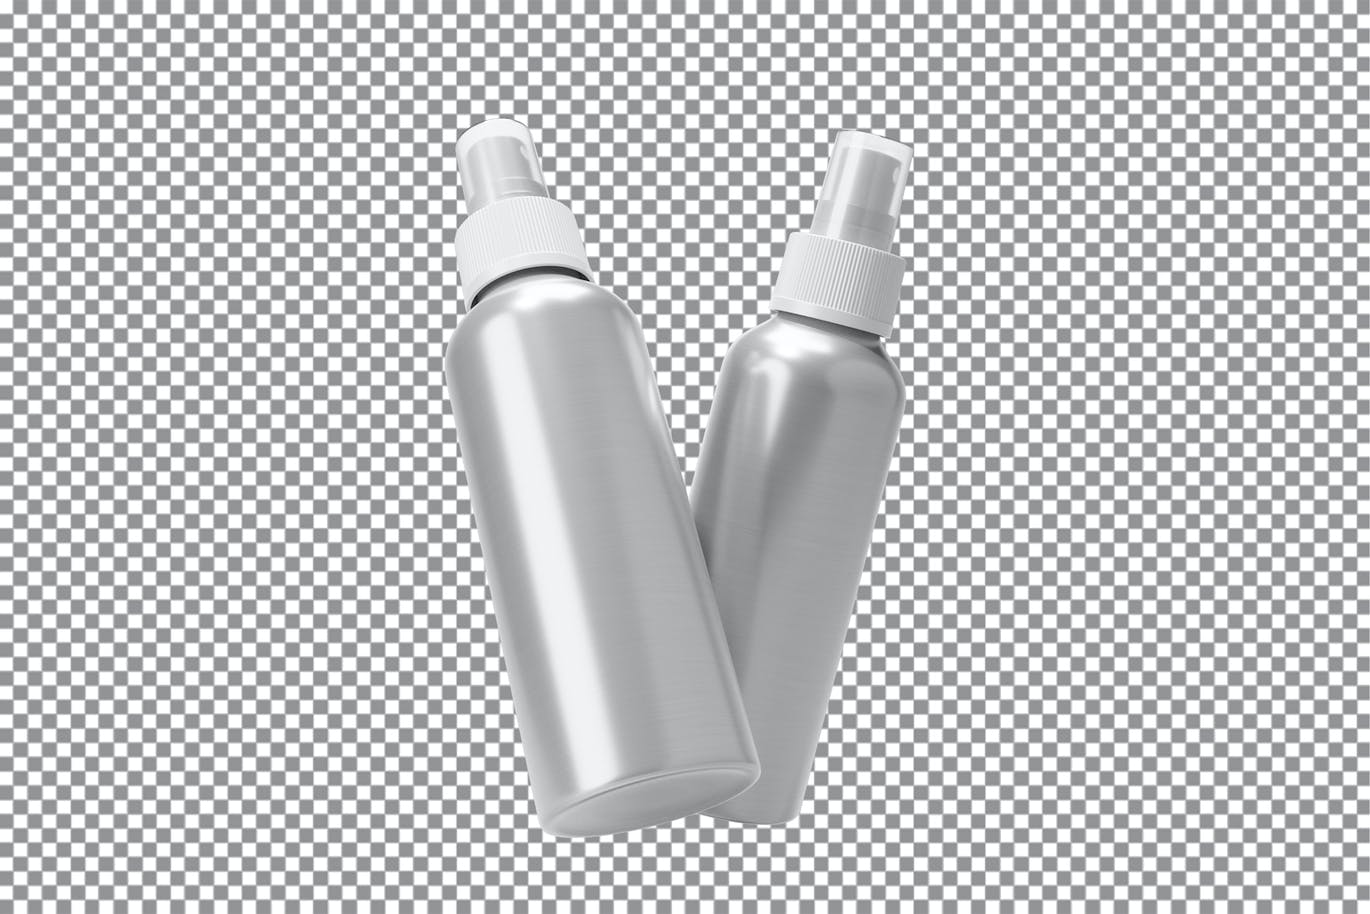 铝制喷雾瓶包装设计样机图psd模板 Aluminum Spray Bottle Mockup Vol.2 样机素材 第2张